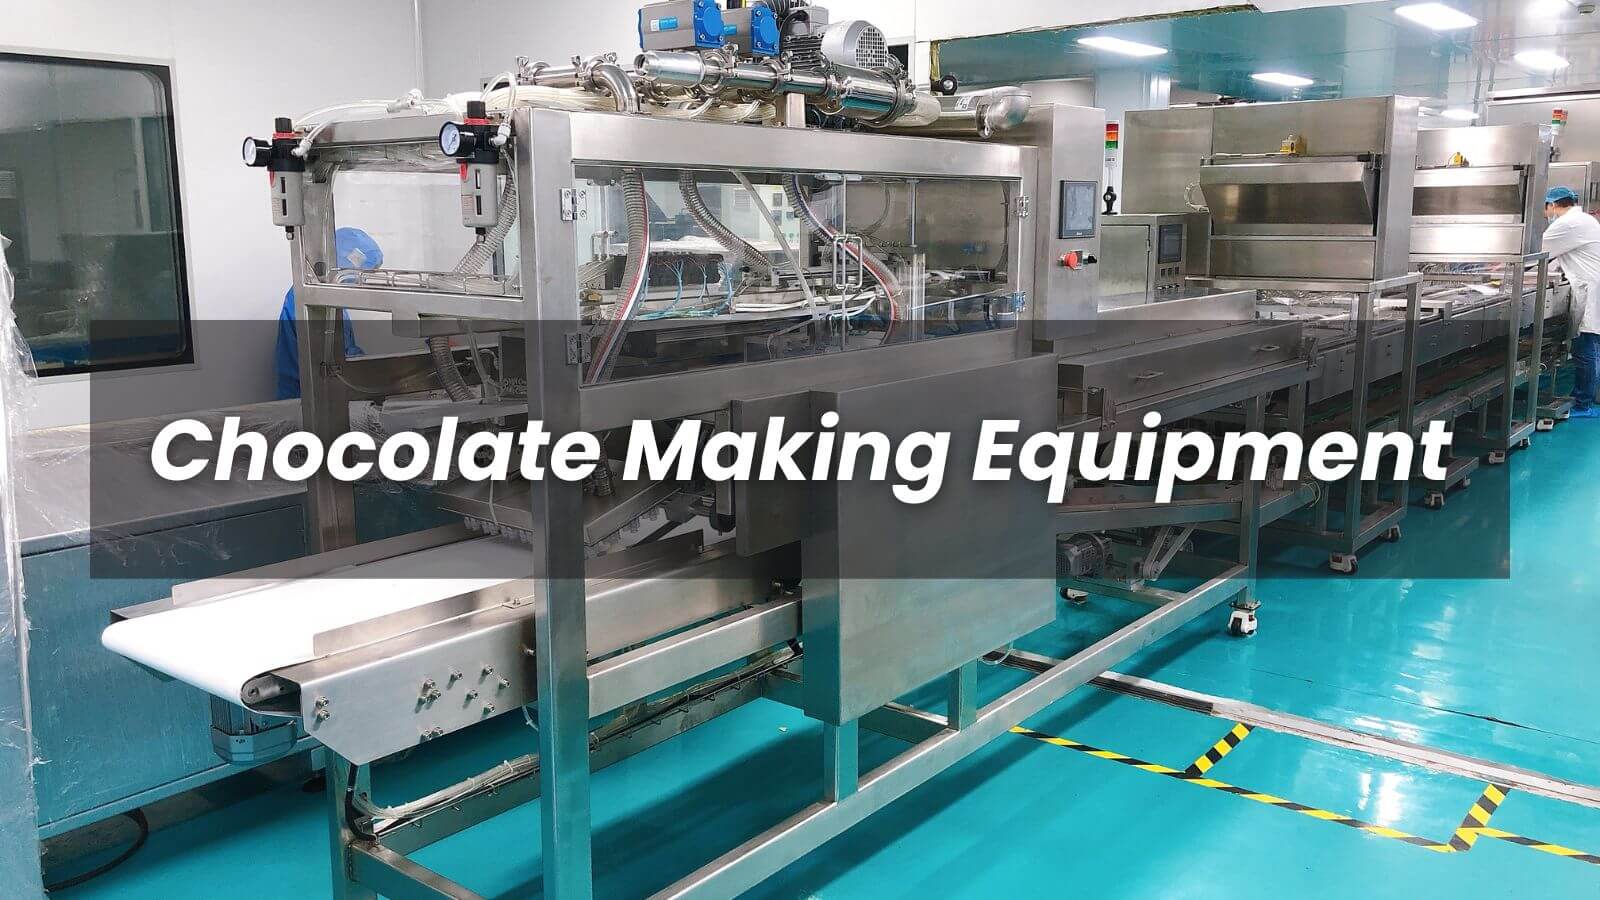 Chocolate Making Equipment UK